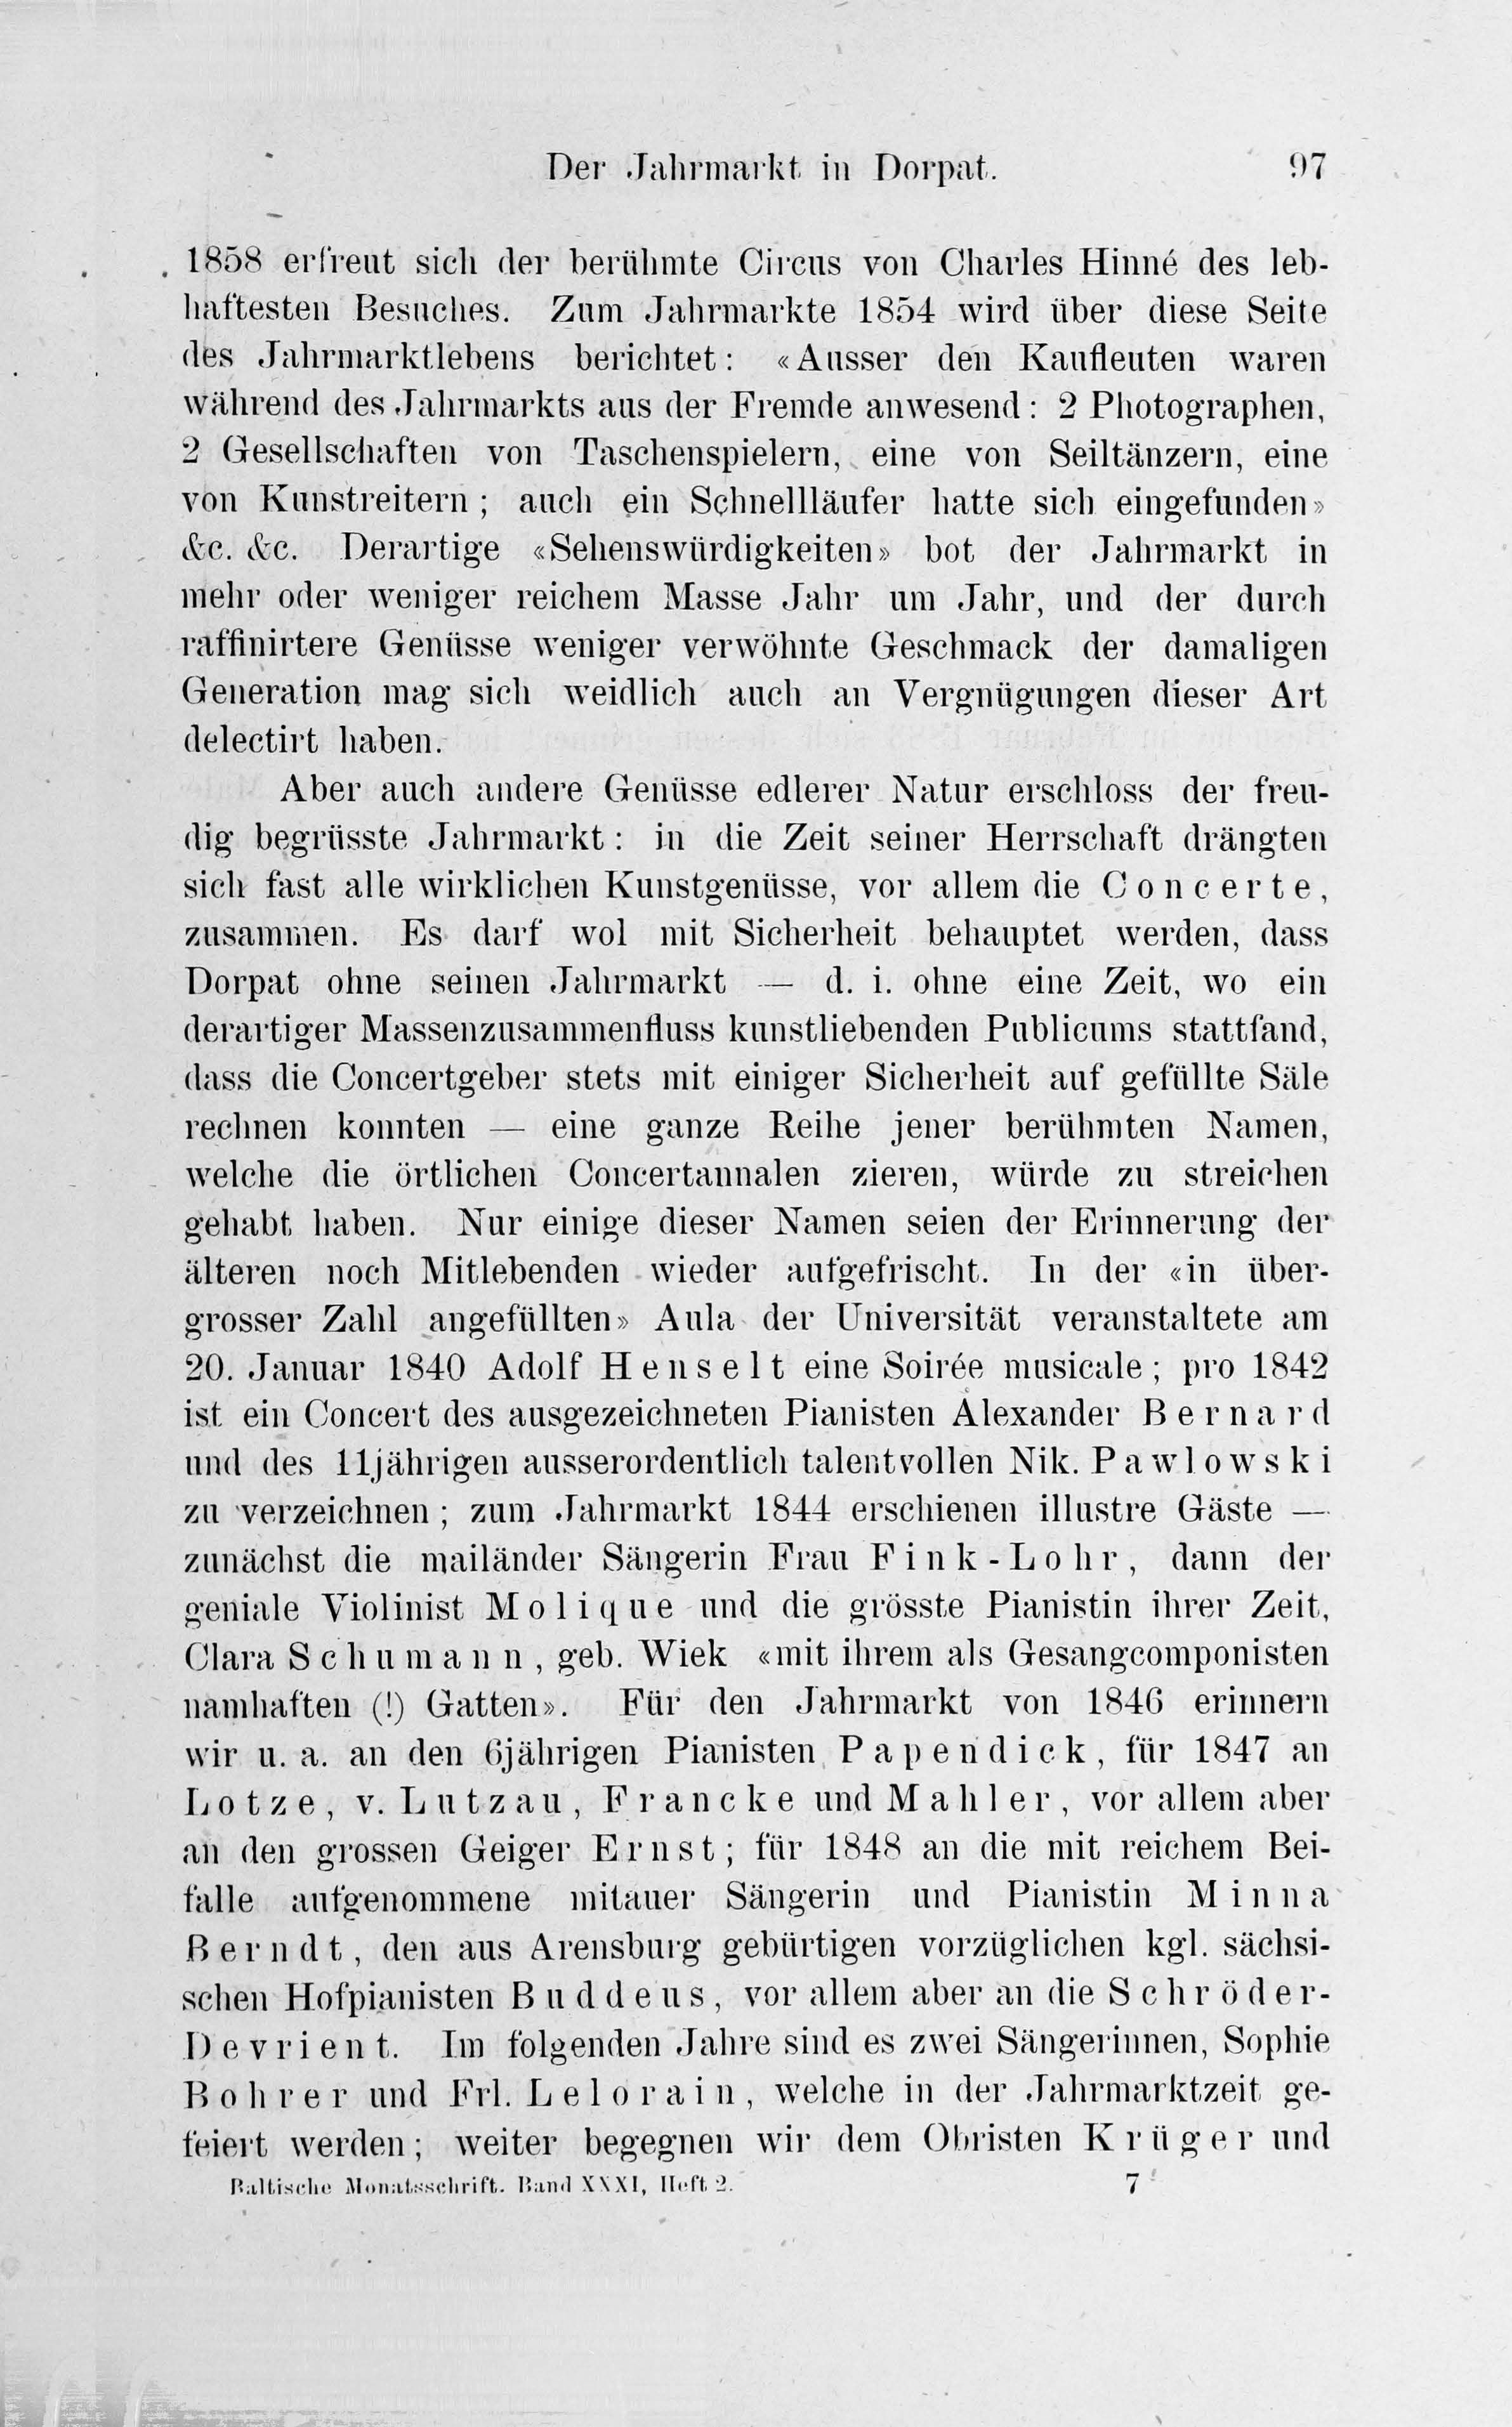 Der Jahrmarkt in Dorpat [2] (1884) | 17. Haupttext